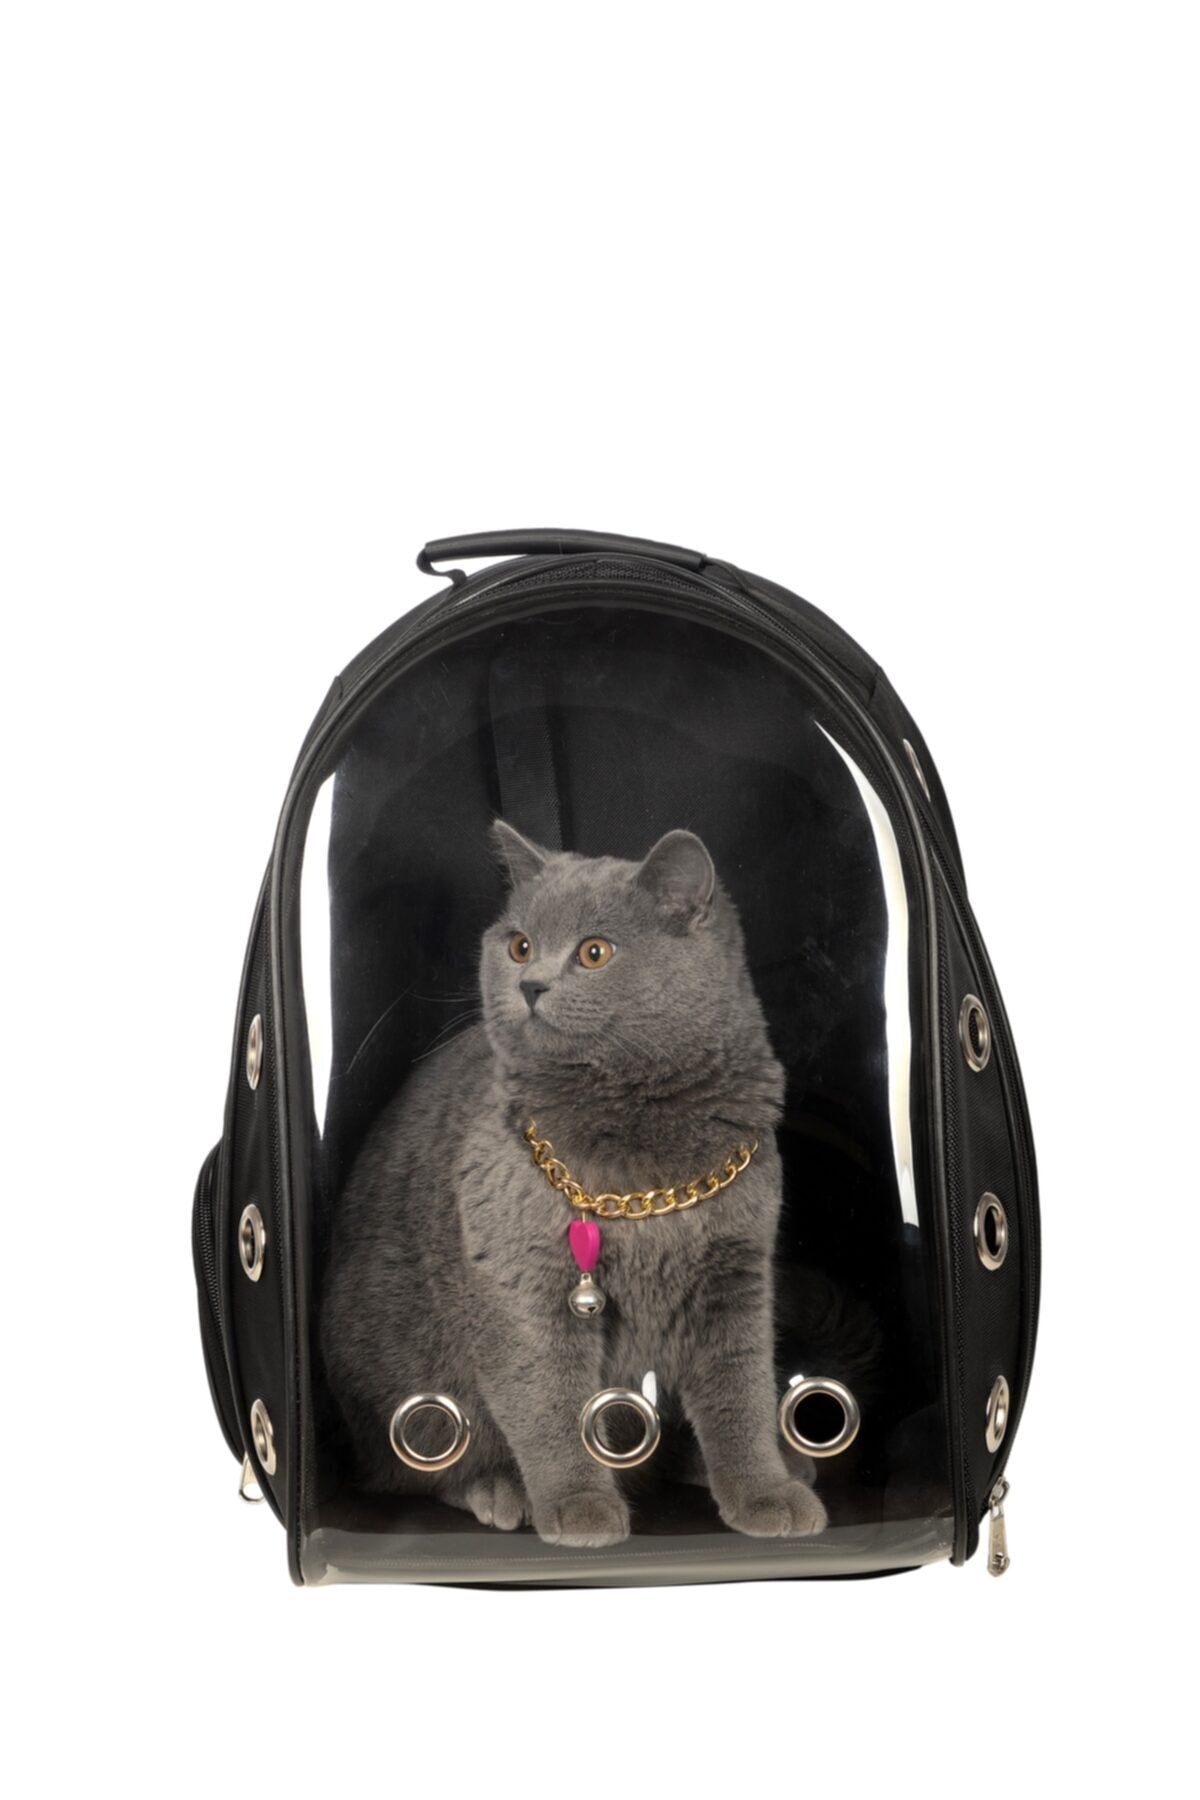 Tropheus Şeffaf Astronot Kırılmaz Kedi Köpek Taşıma Çantası 42 X 22 X 33 Cm Siyah